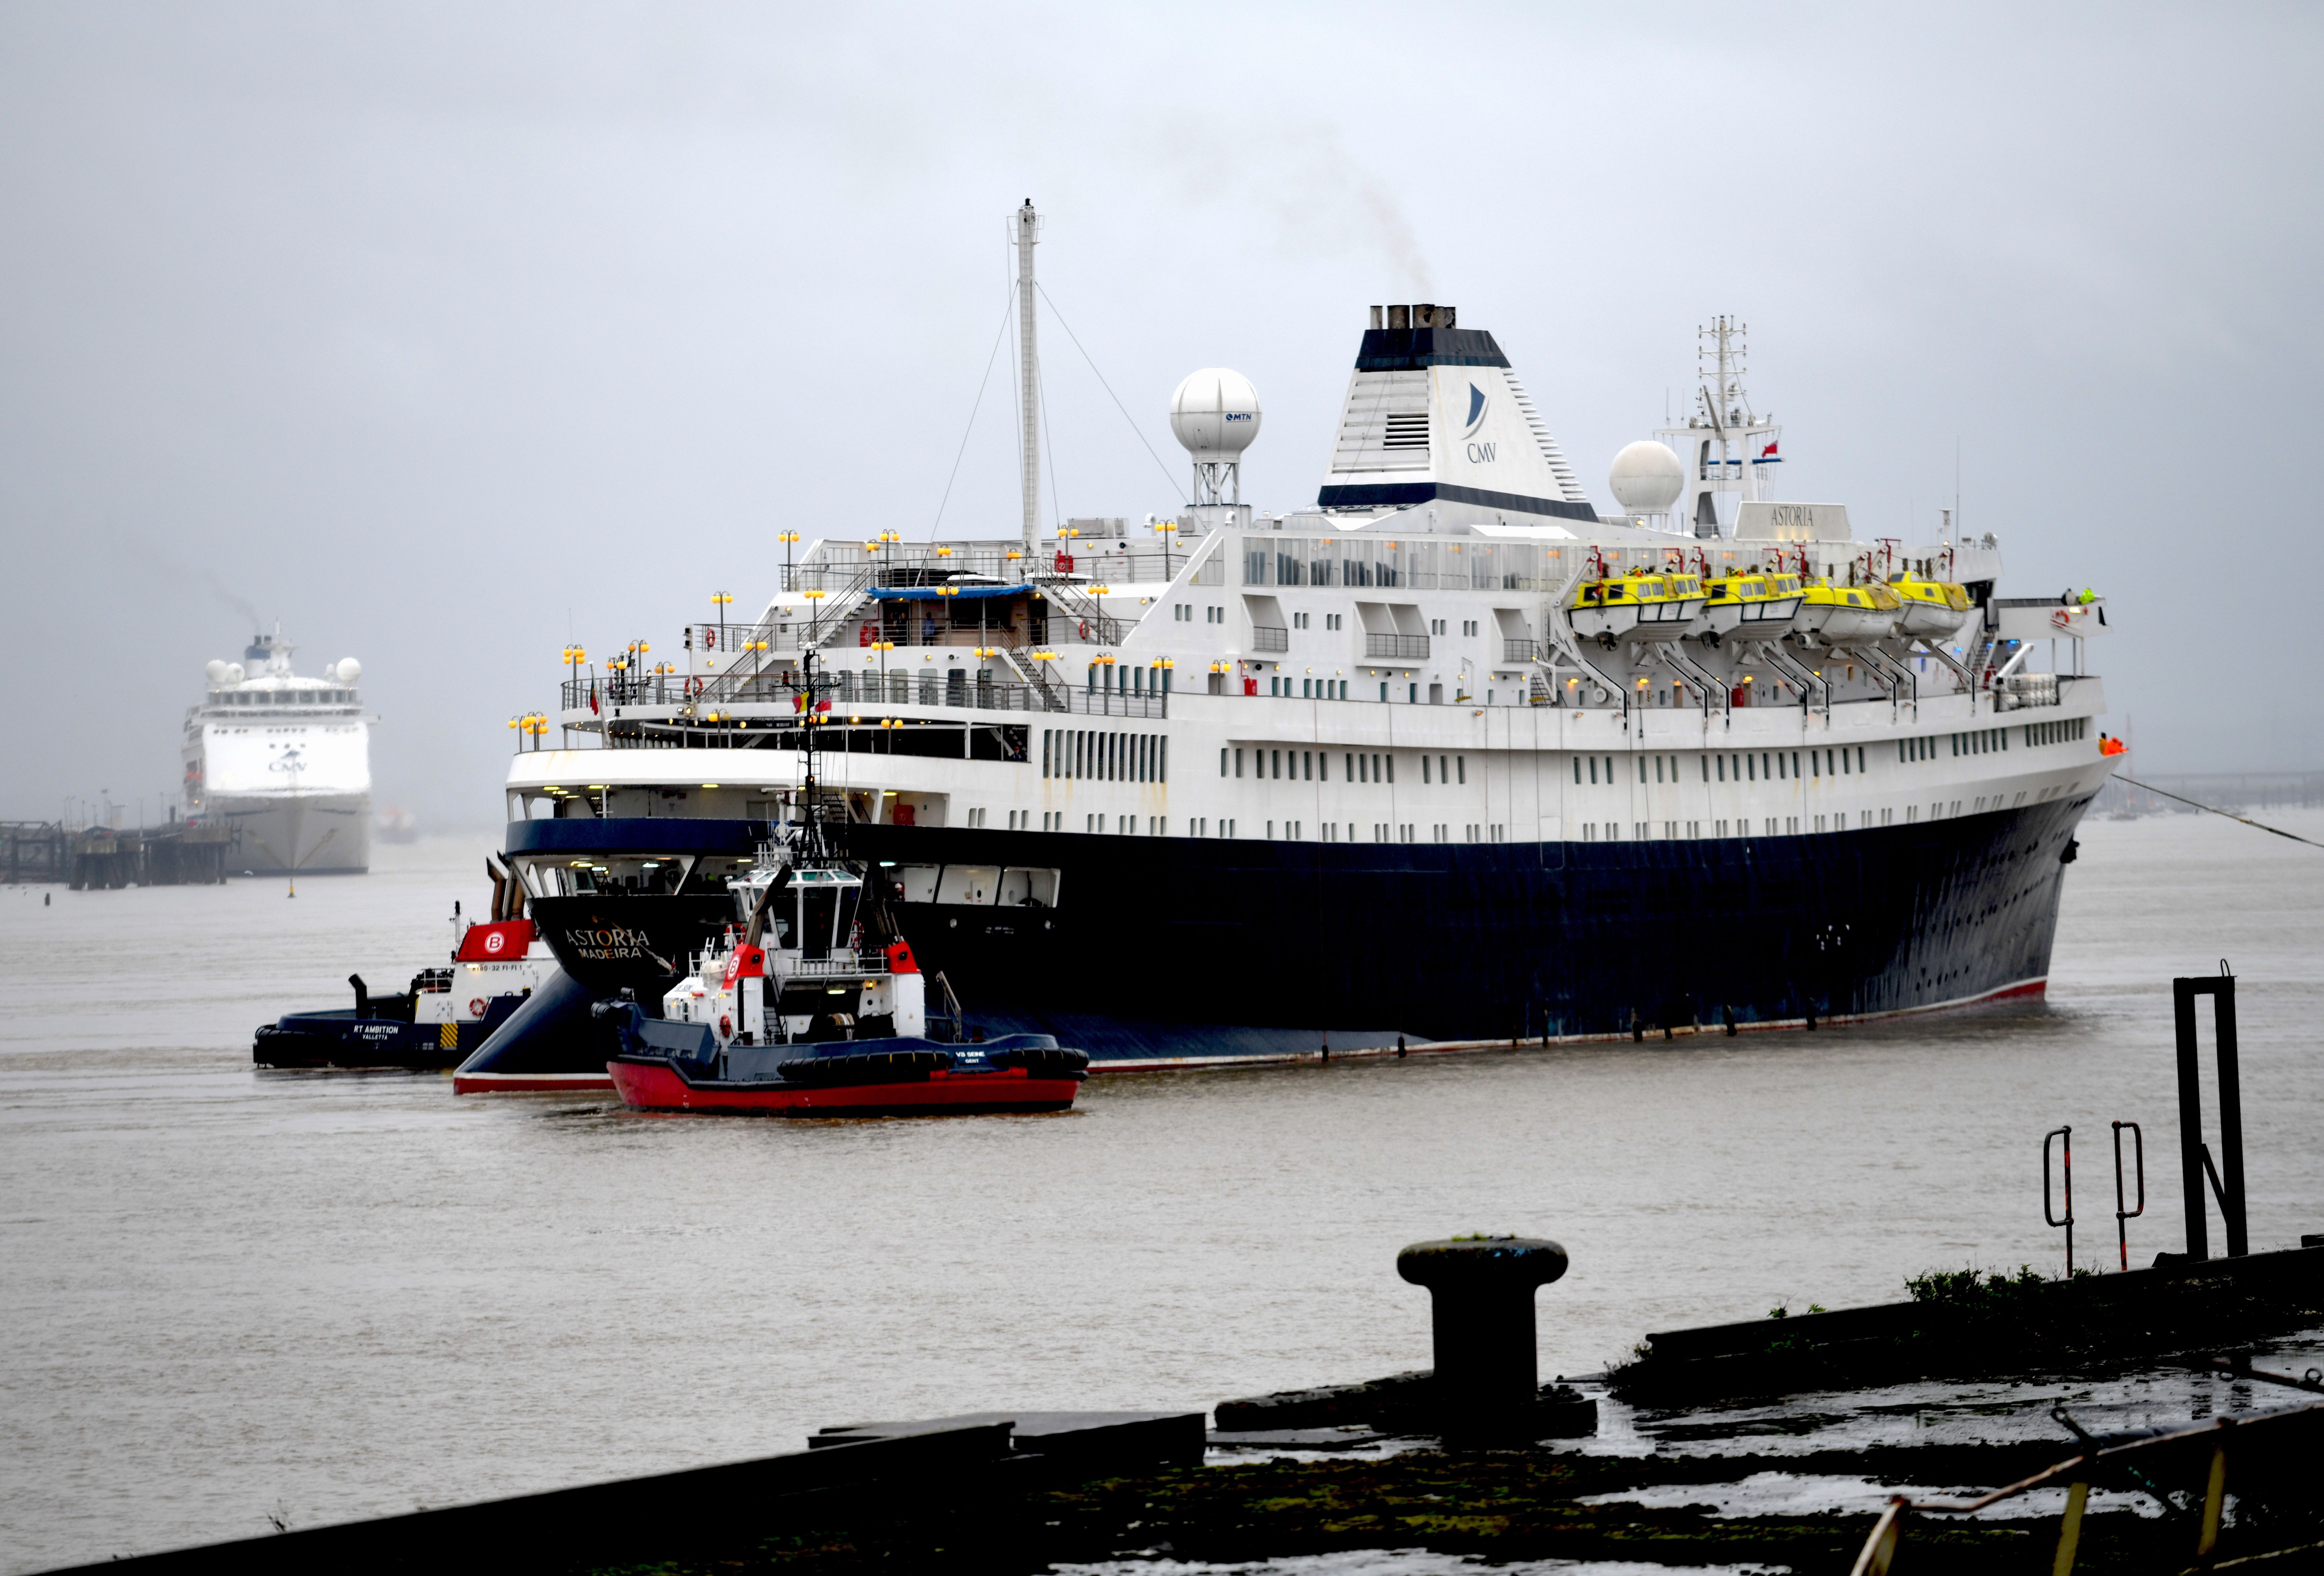 Astoria verlässt die Tilbury Docks und kommt an ihren ehemaligen Flottenkameraden Magellan und Columbus vorbei